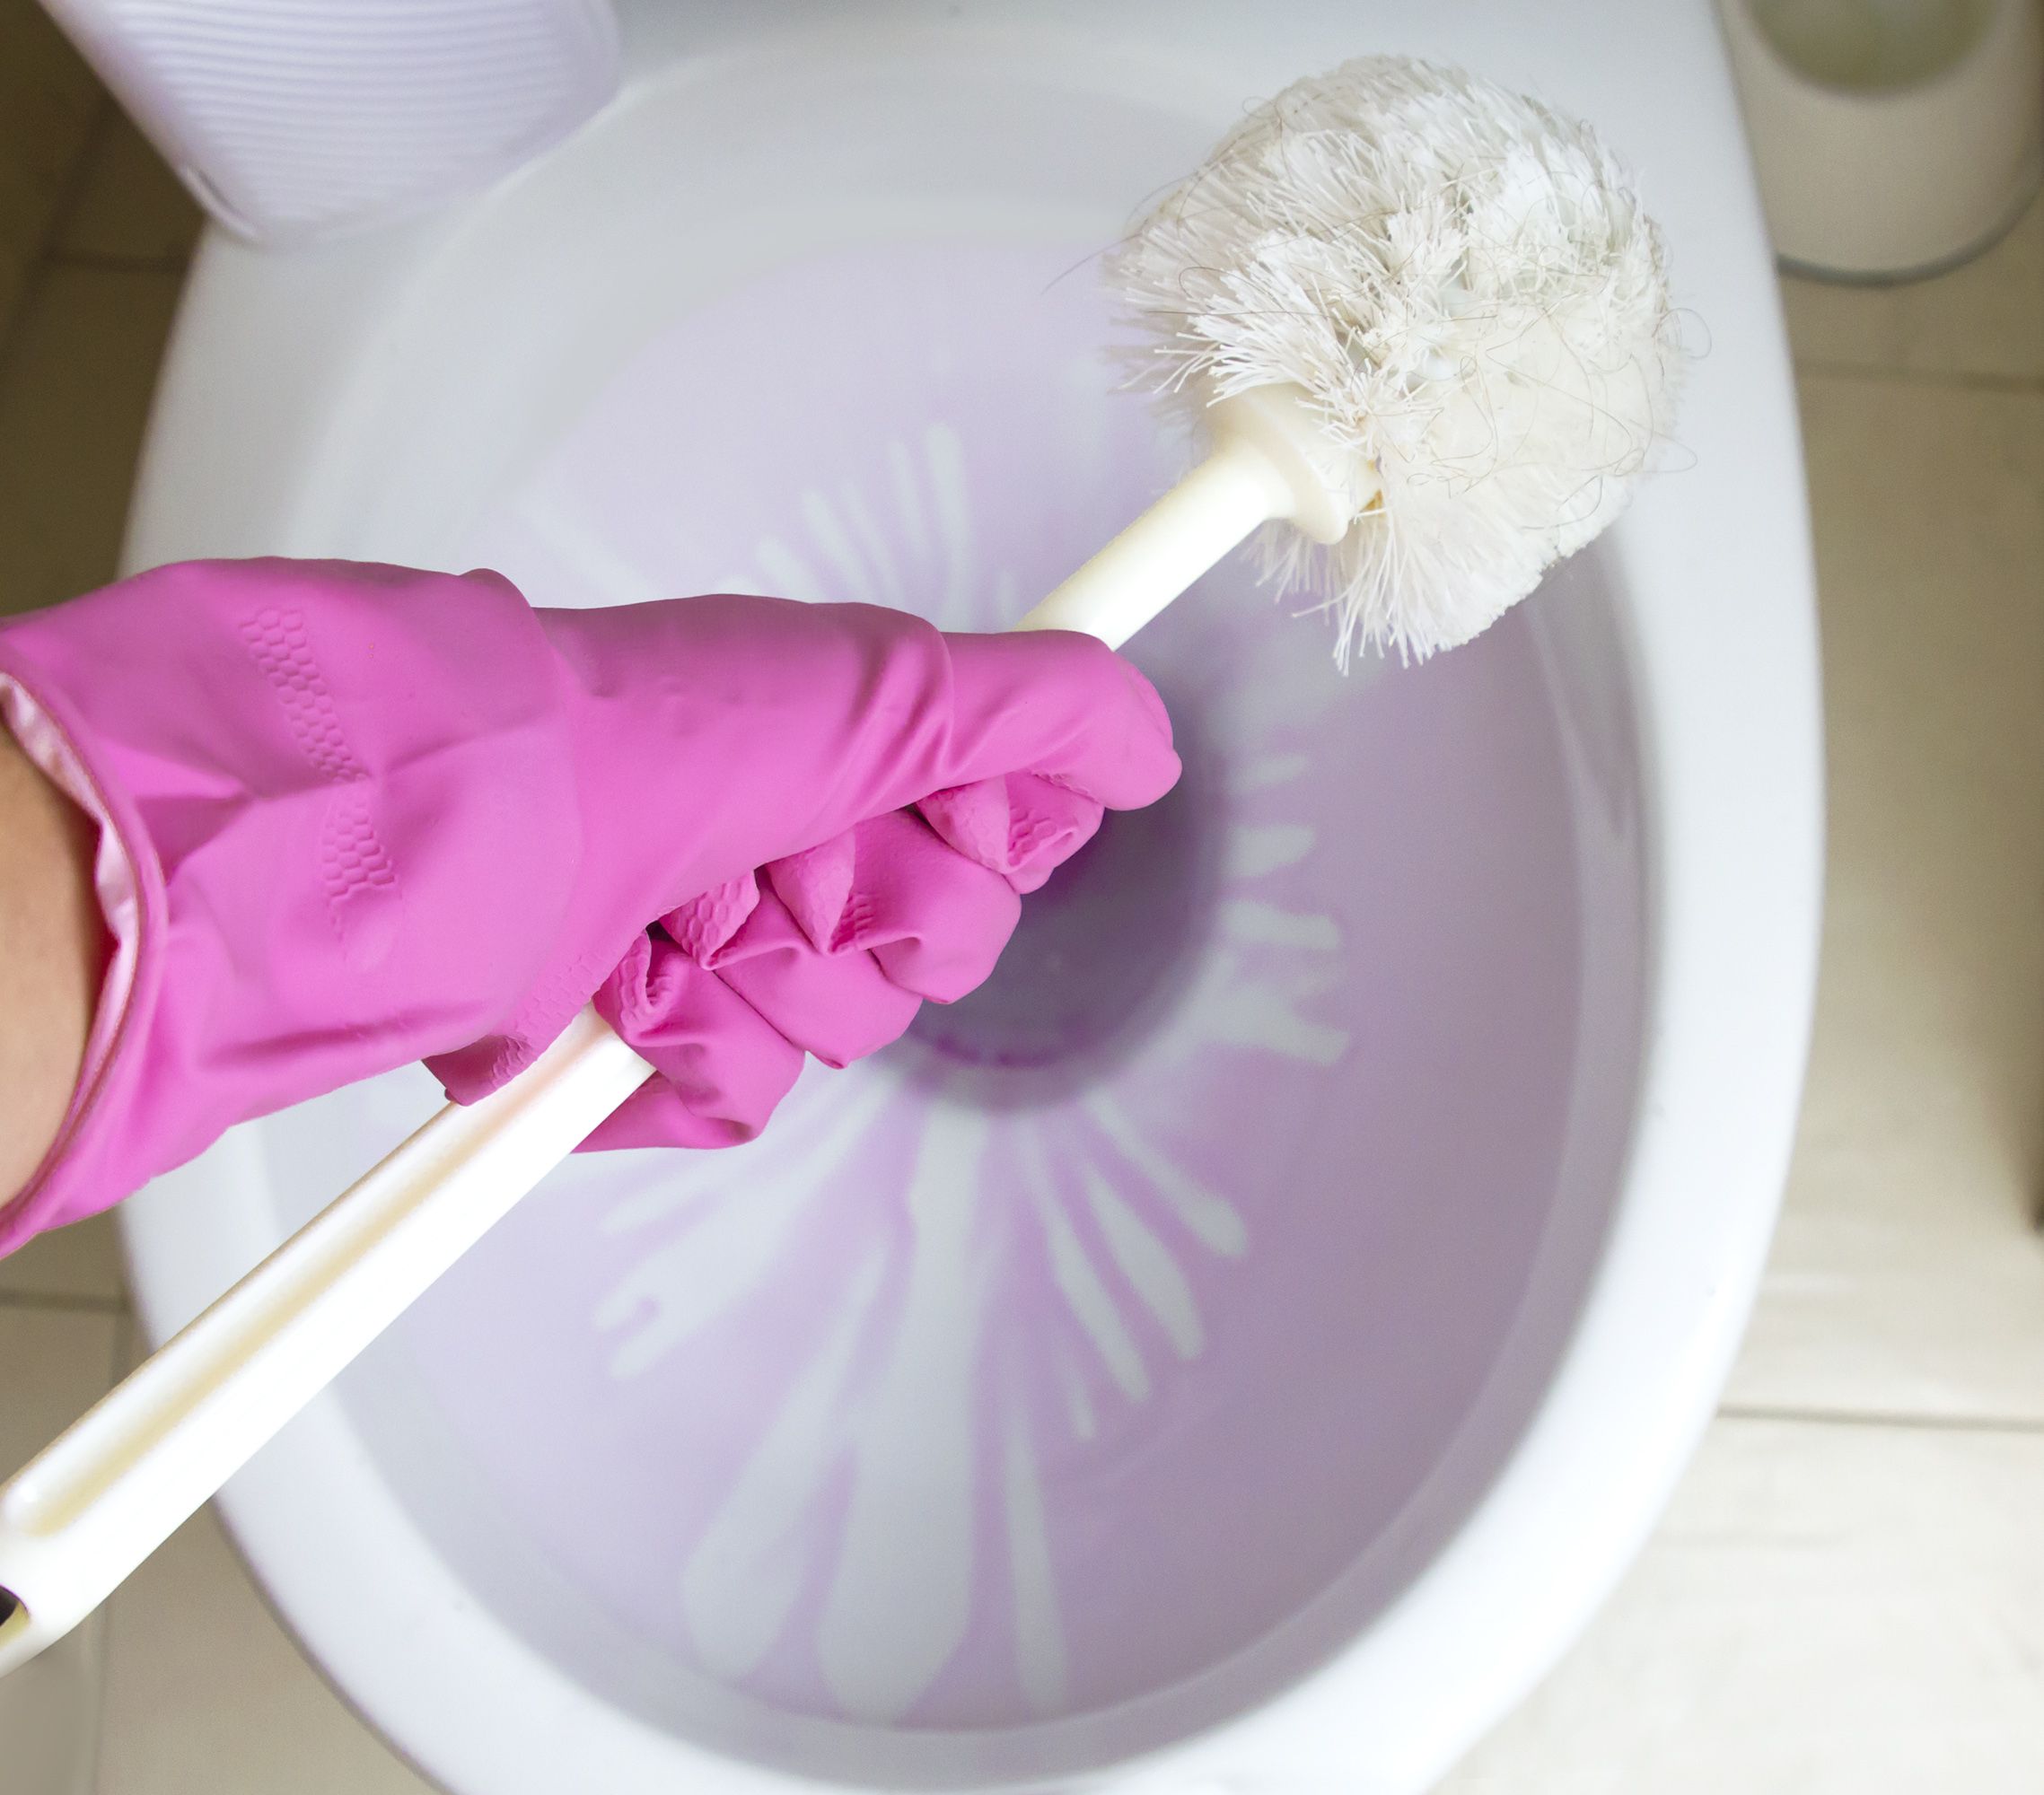 Consejos para limpiar la limpiar la escobilla del baño correctamente Foto: bigstock